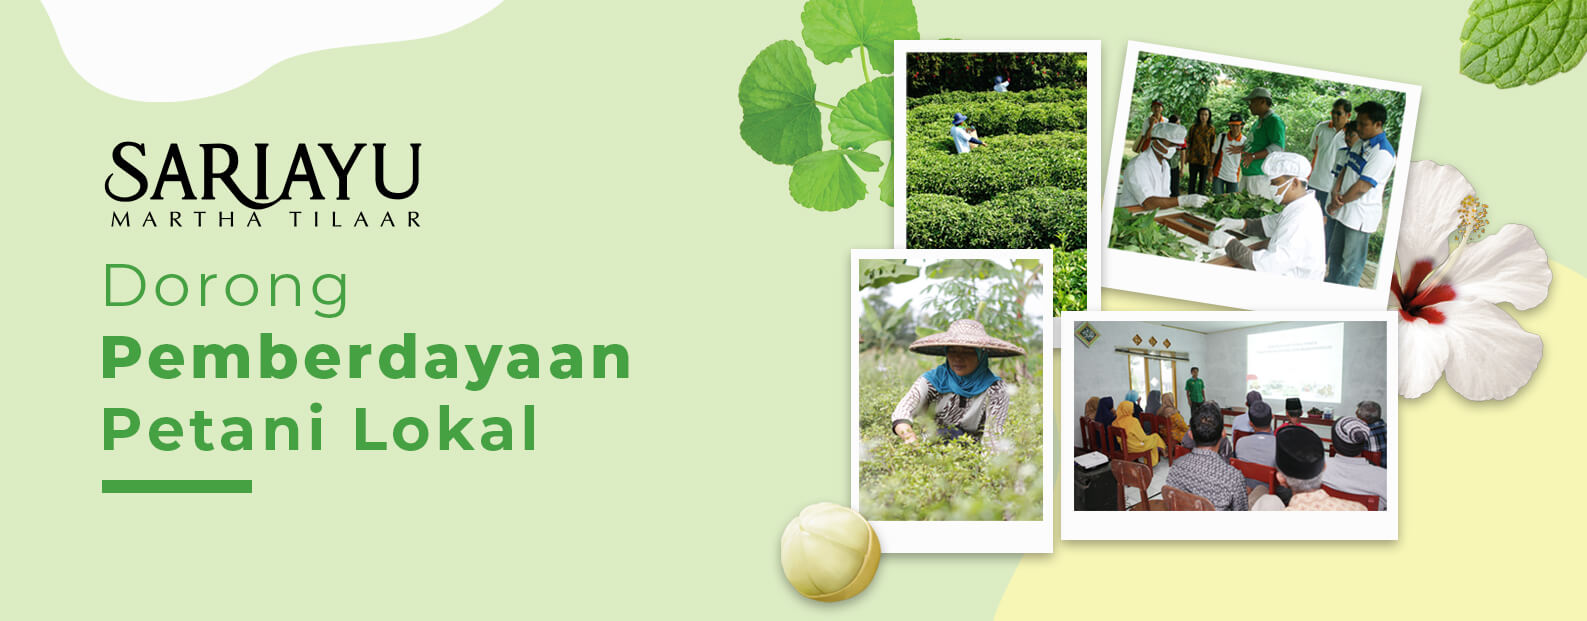 Berbasis SDGs, Martha Tilaar Group Manfaatkan Kemitraan dengan Petani Lokal dalam Produksi Sariayu